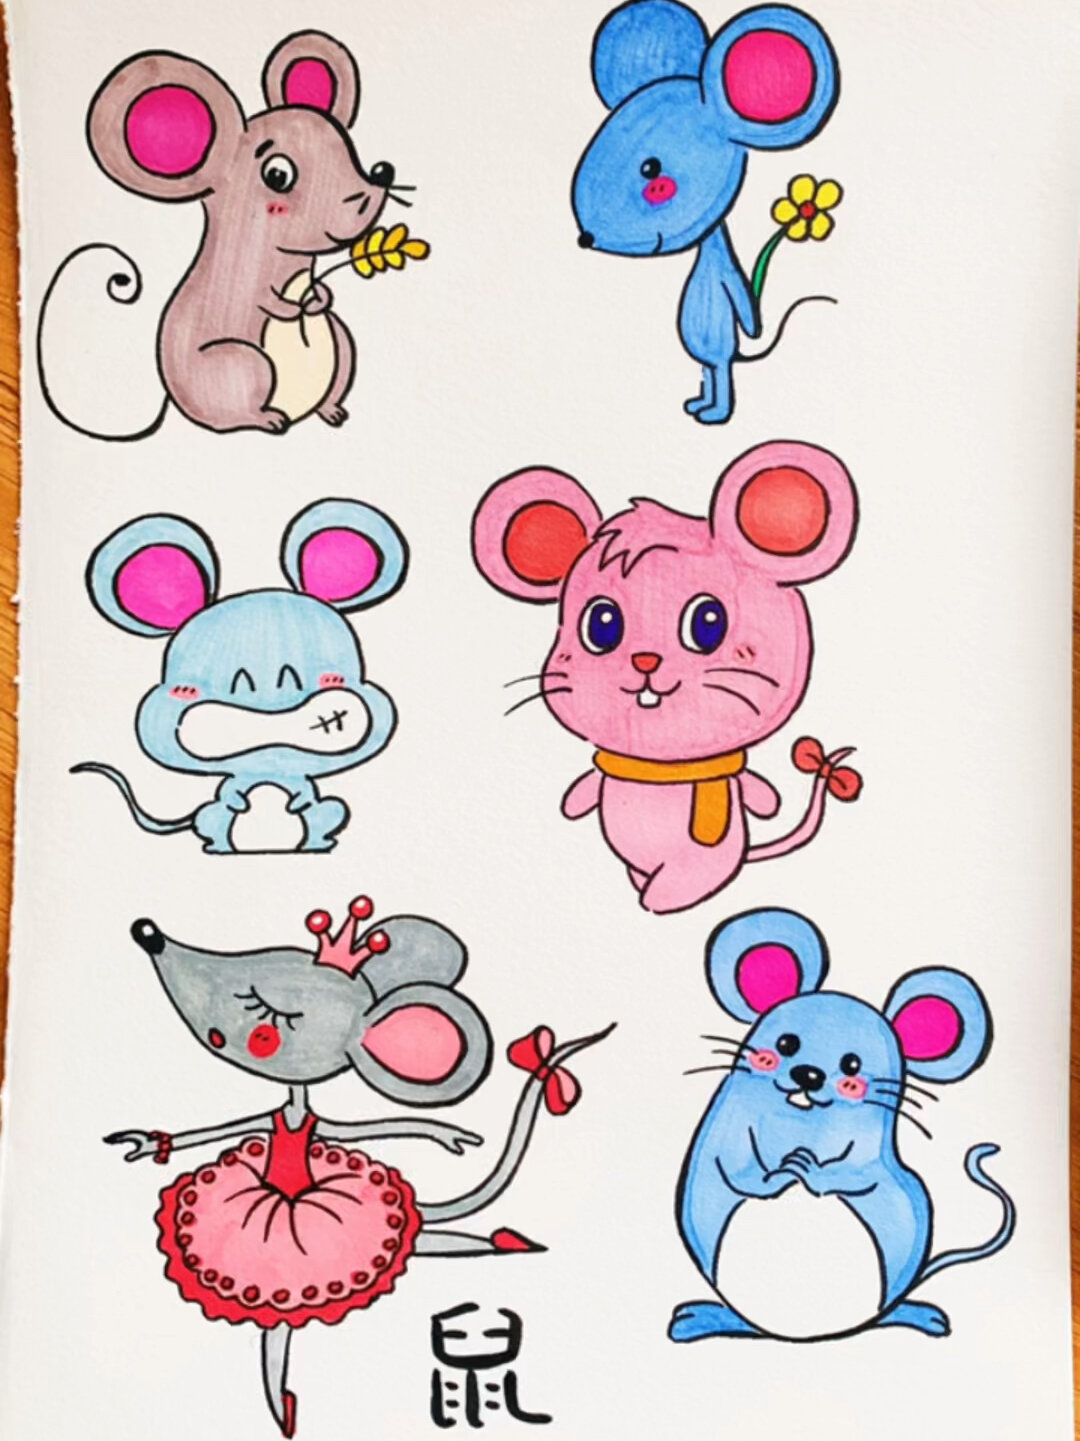 老鼠简笔画彩色图片